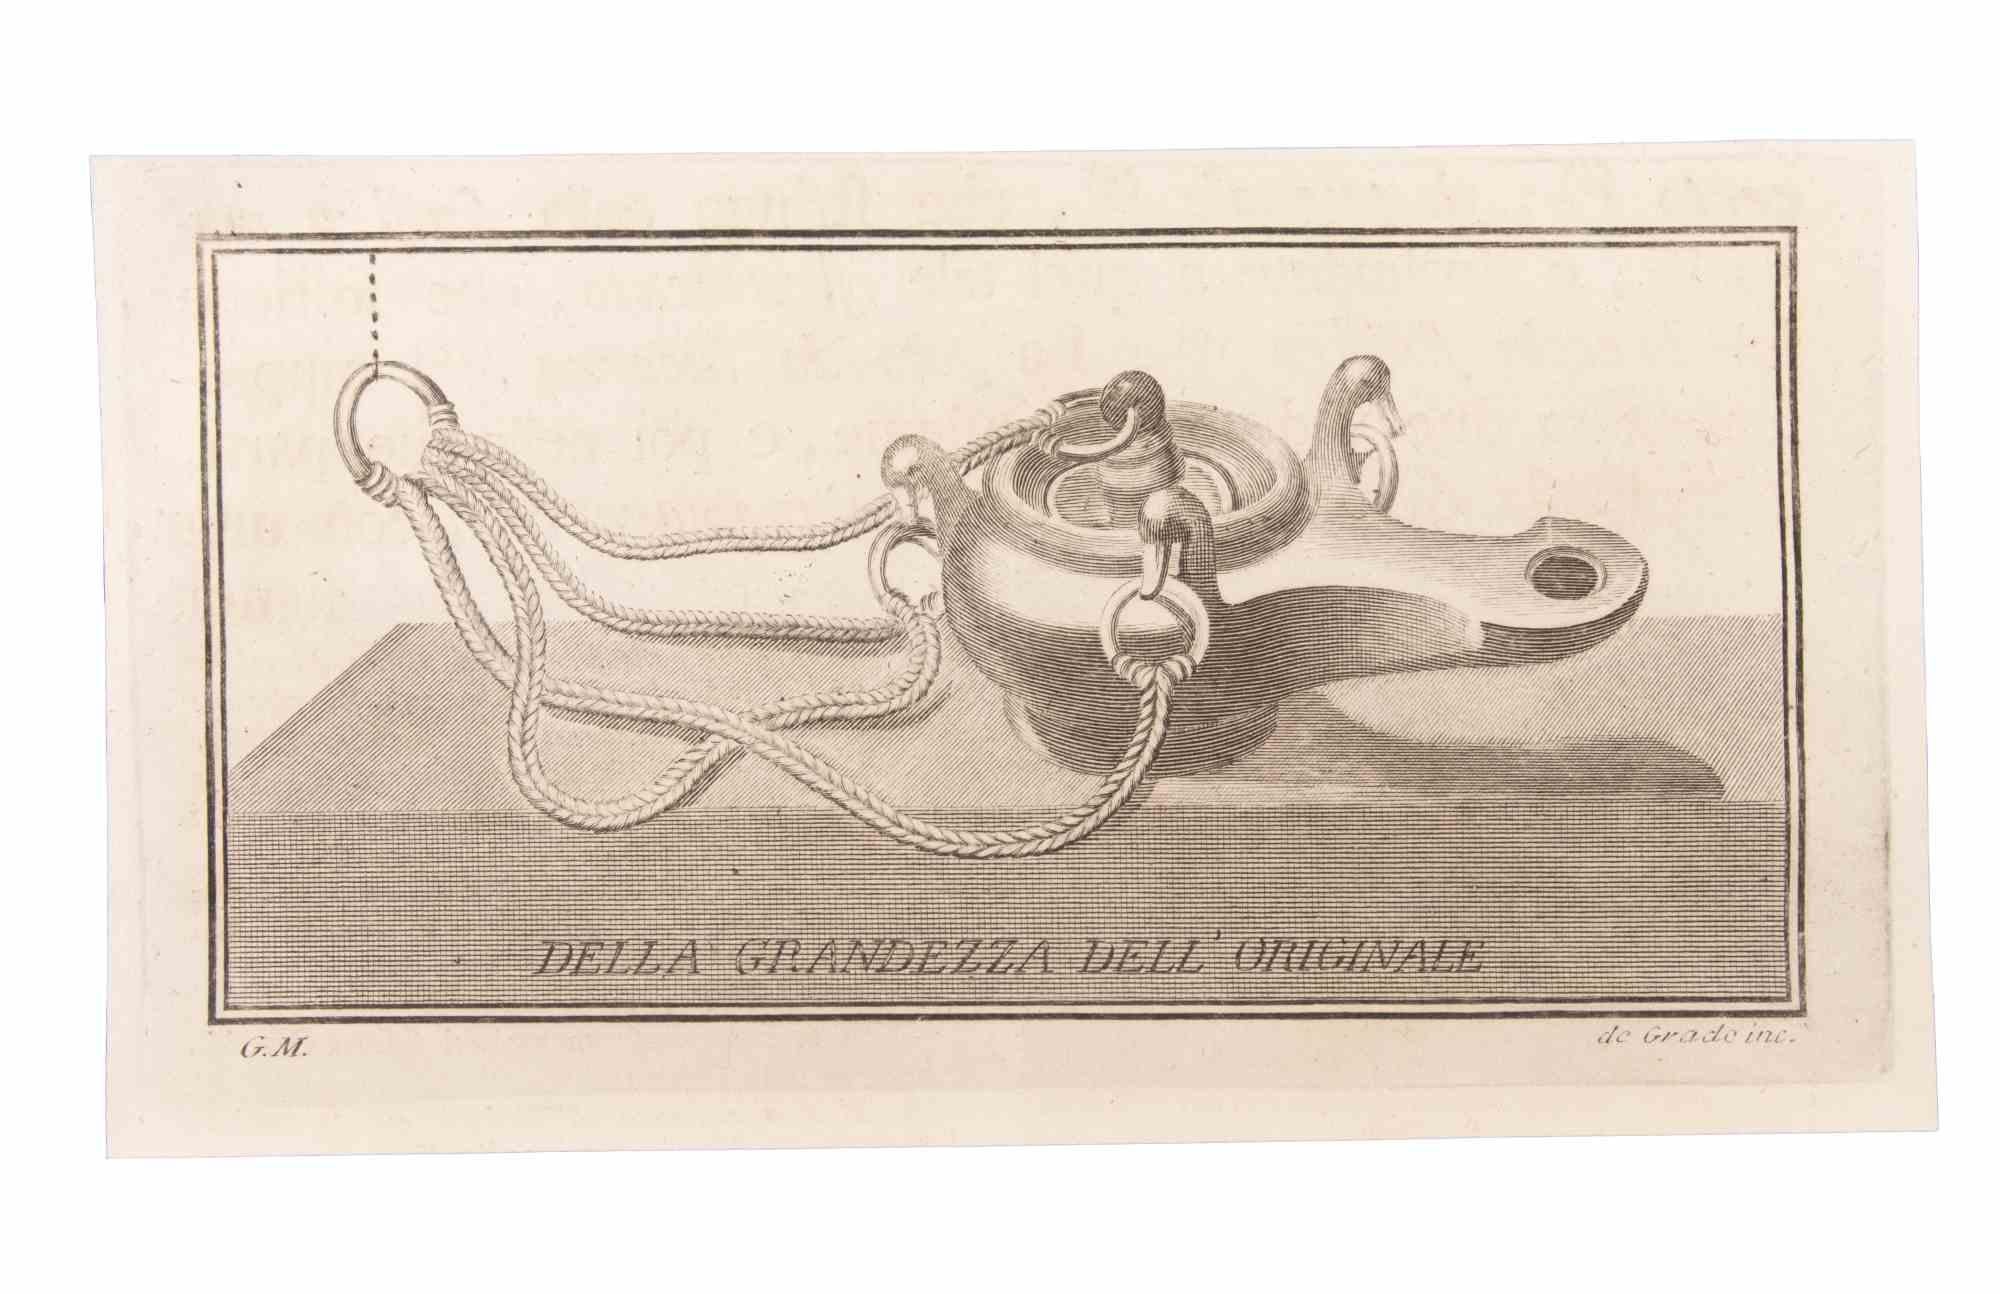 Lampe à huile à suspendre est une gravure réalisée par  Filippo de Grado (1705-1780).

La gravure appartient à la suite d'estampes "Antiquités d'Herculanum exposées" (titre original : "Le Antichità di Ercolano Esposte"), un volume de huit gravures